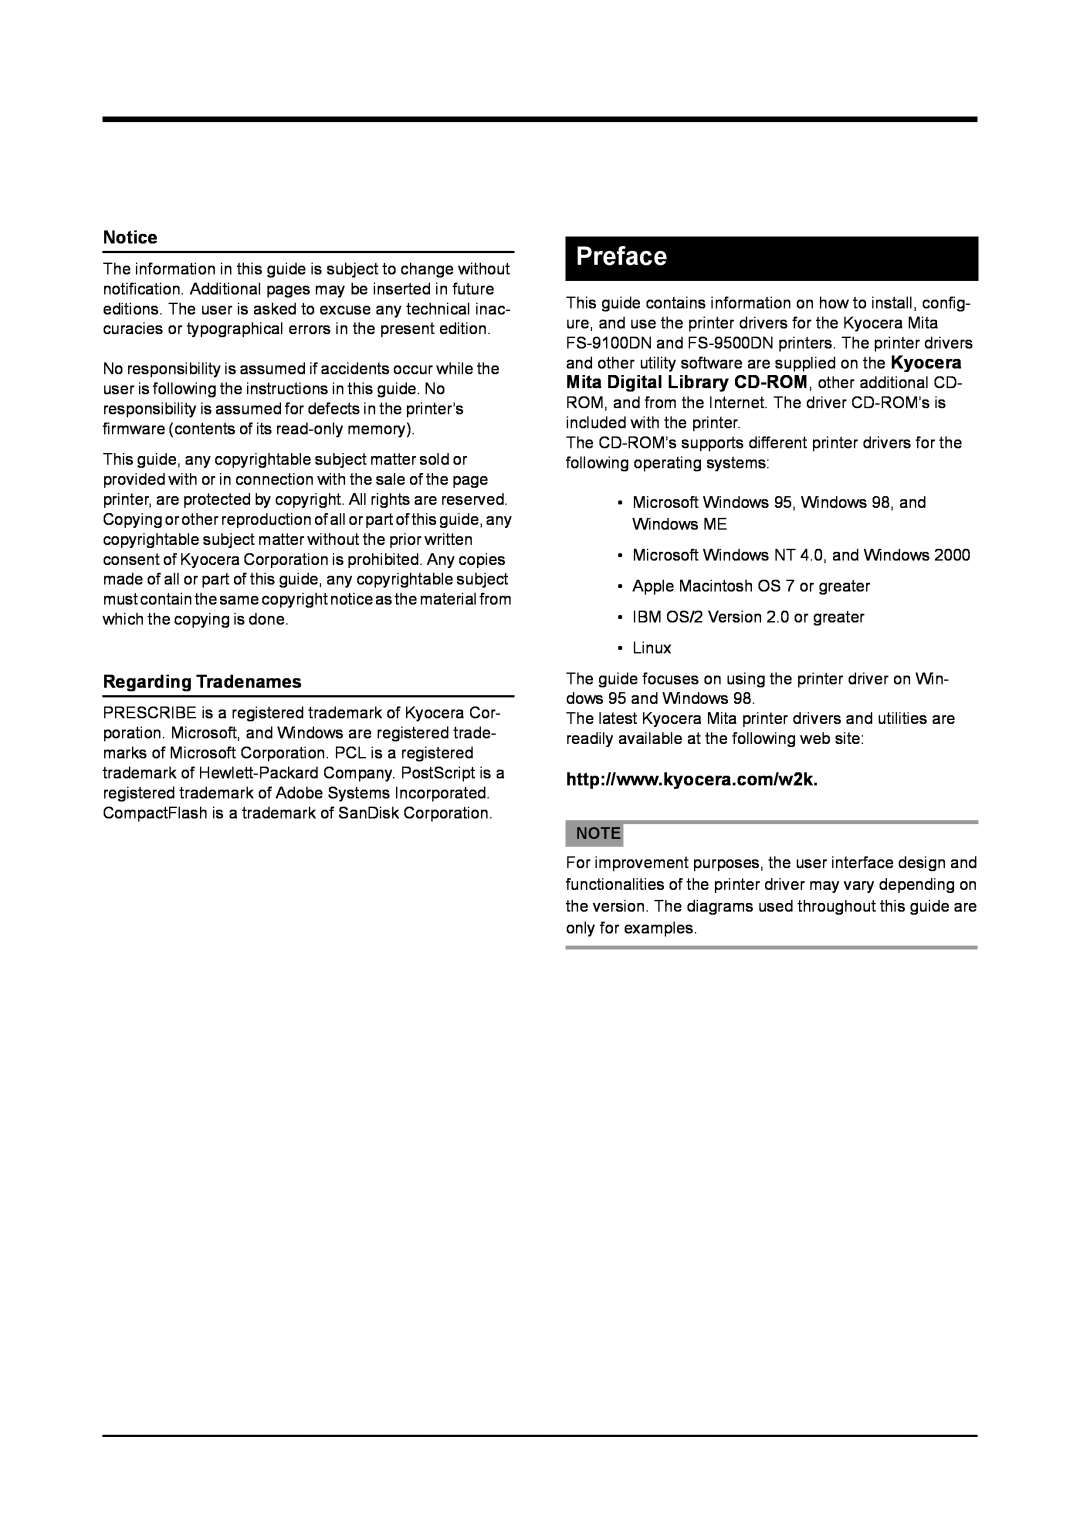 Kyocera S-9100DN manual Preface, Notice, Regarding Tradenames 